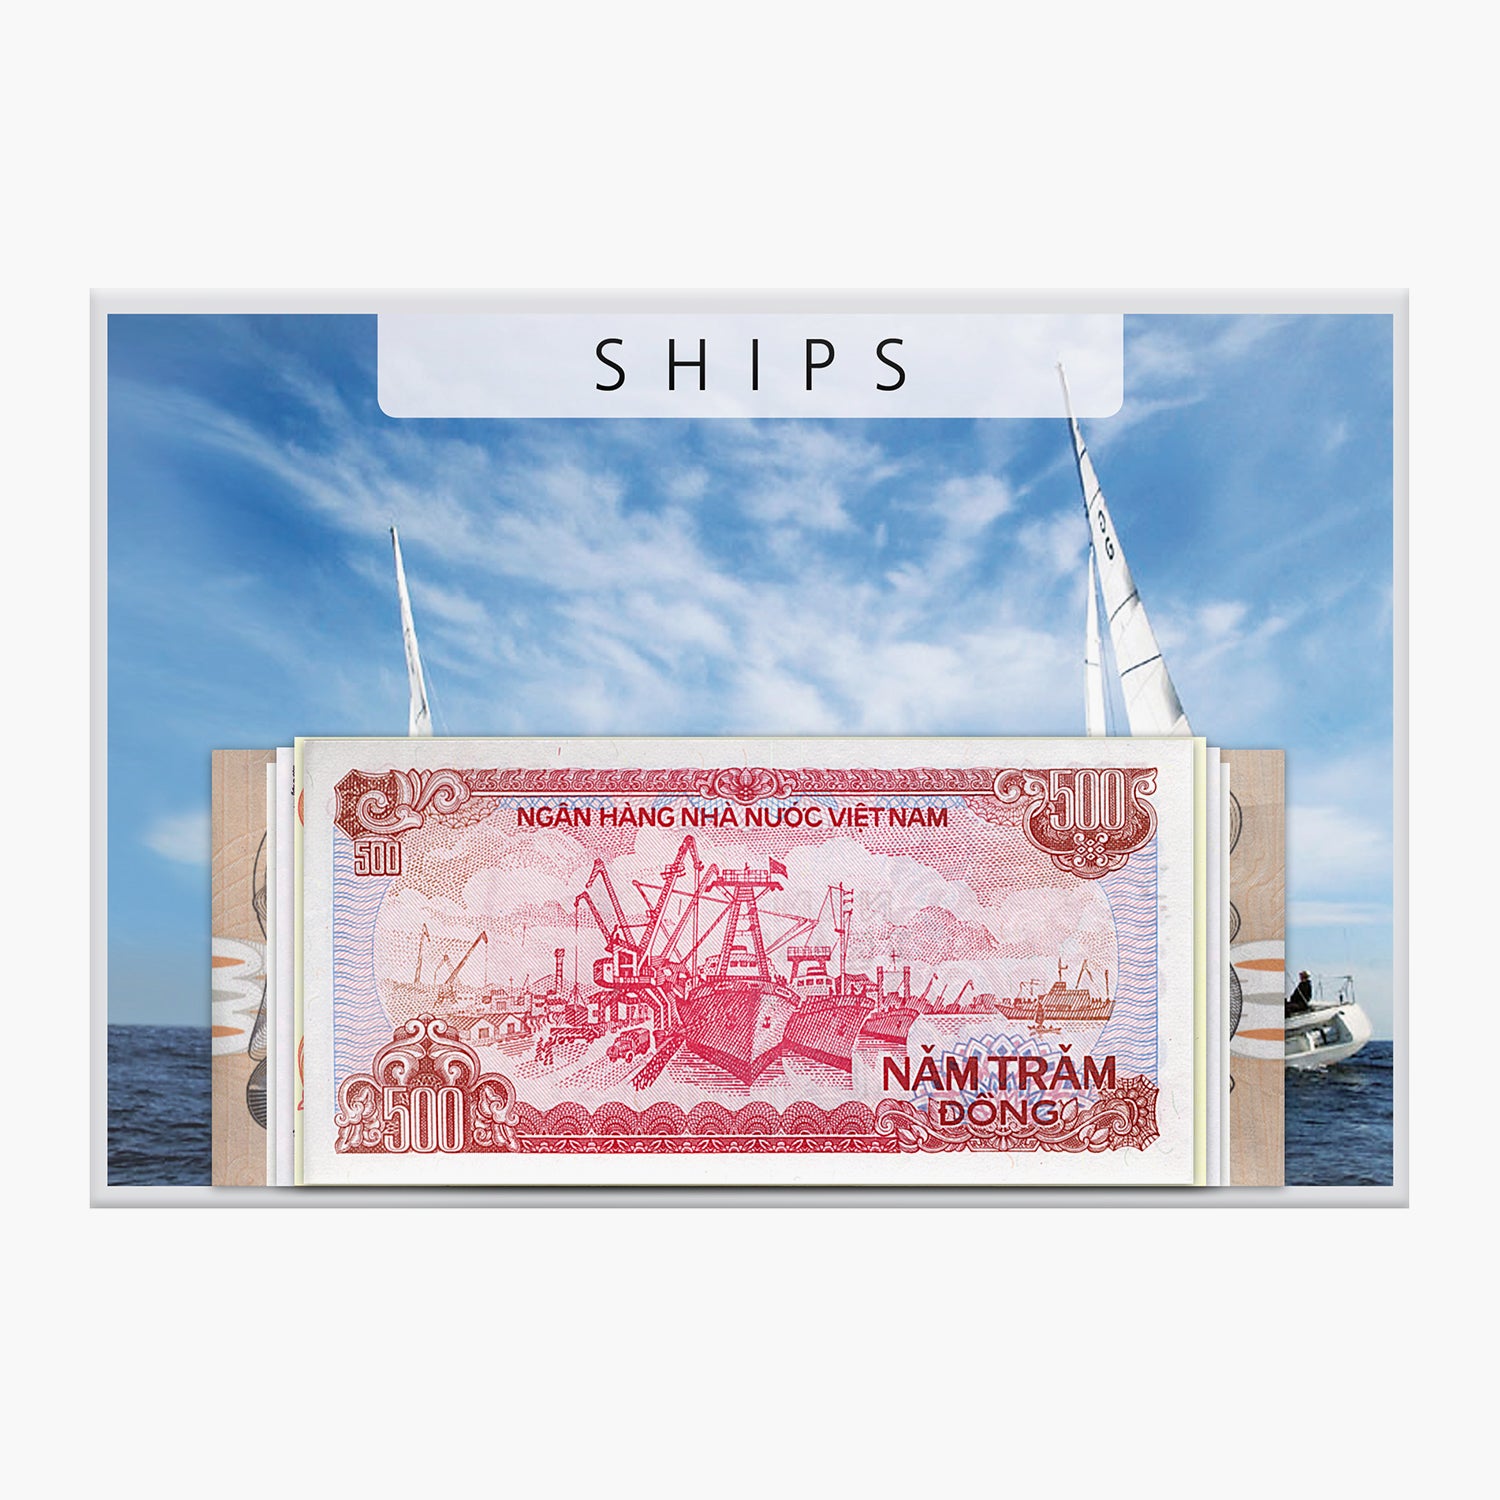 紙幣コレクション「Ships I」